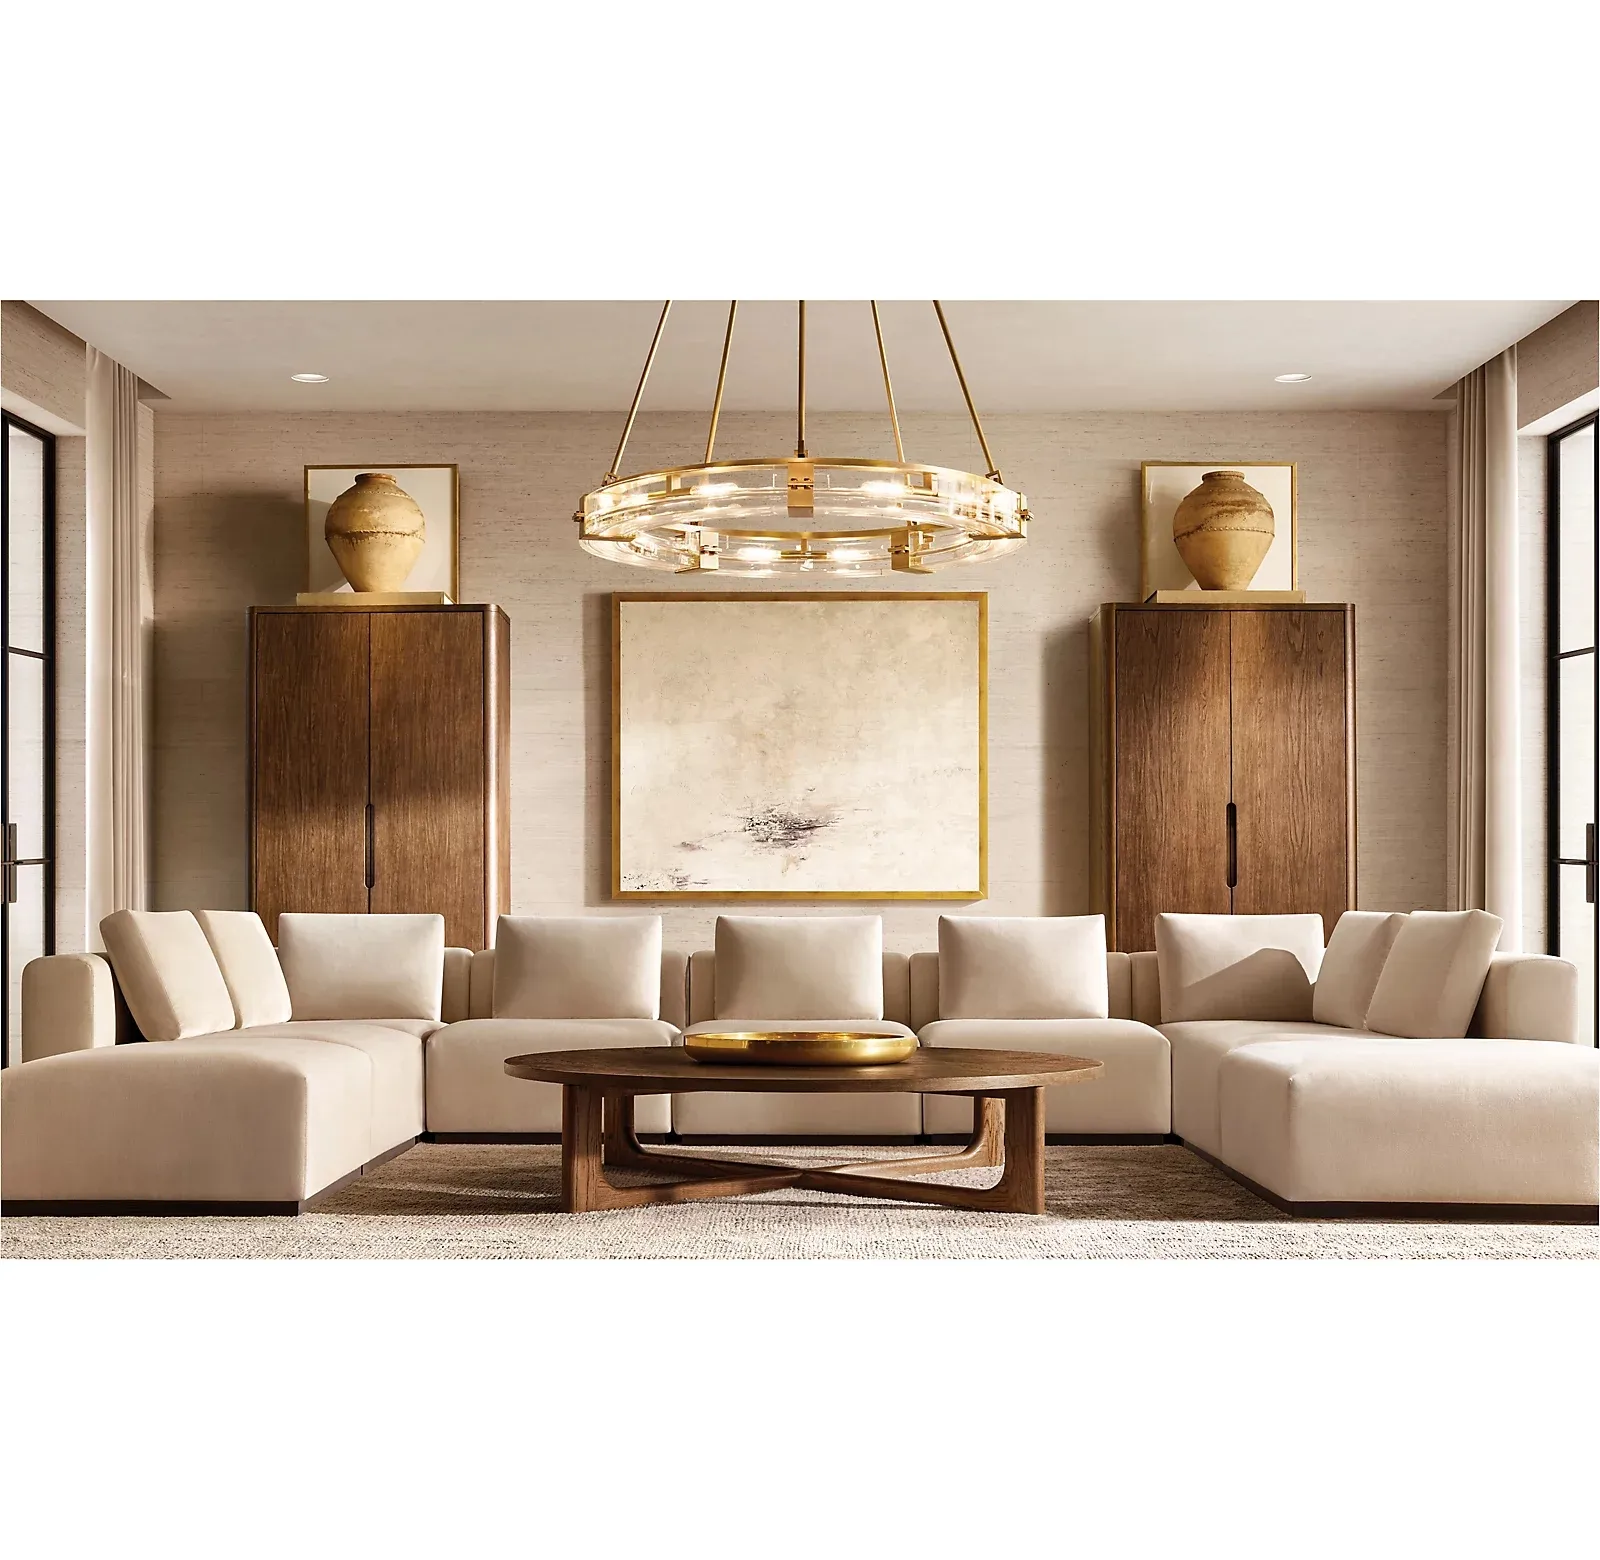 Neuankömmling heißer Verkauf Innen wohn möbel Mode Wohnzimmer moderne Sofa garnitur